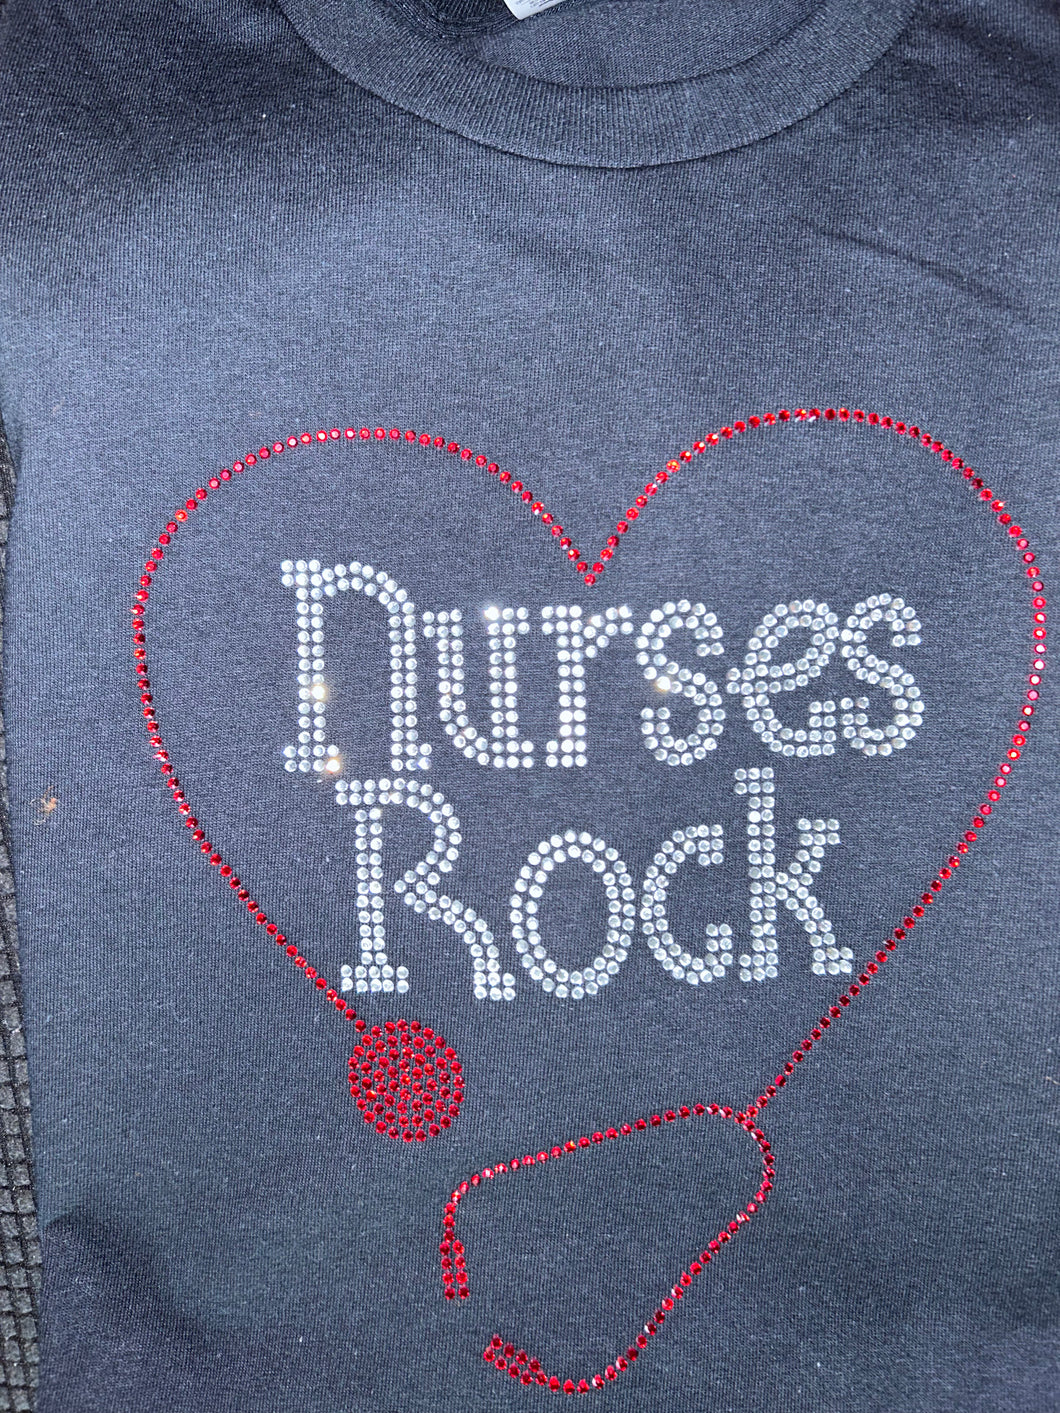 Nurses Rock Bling tee